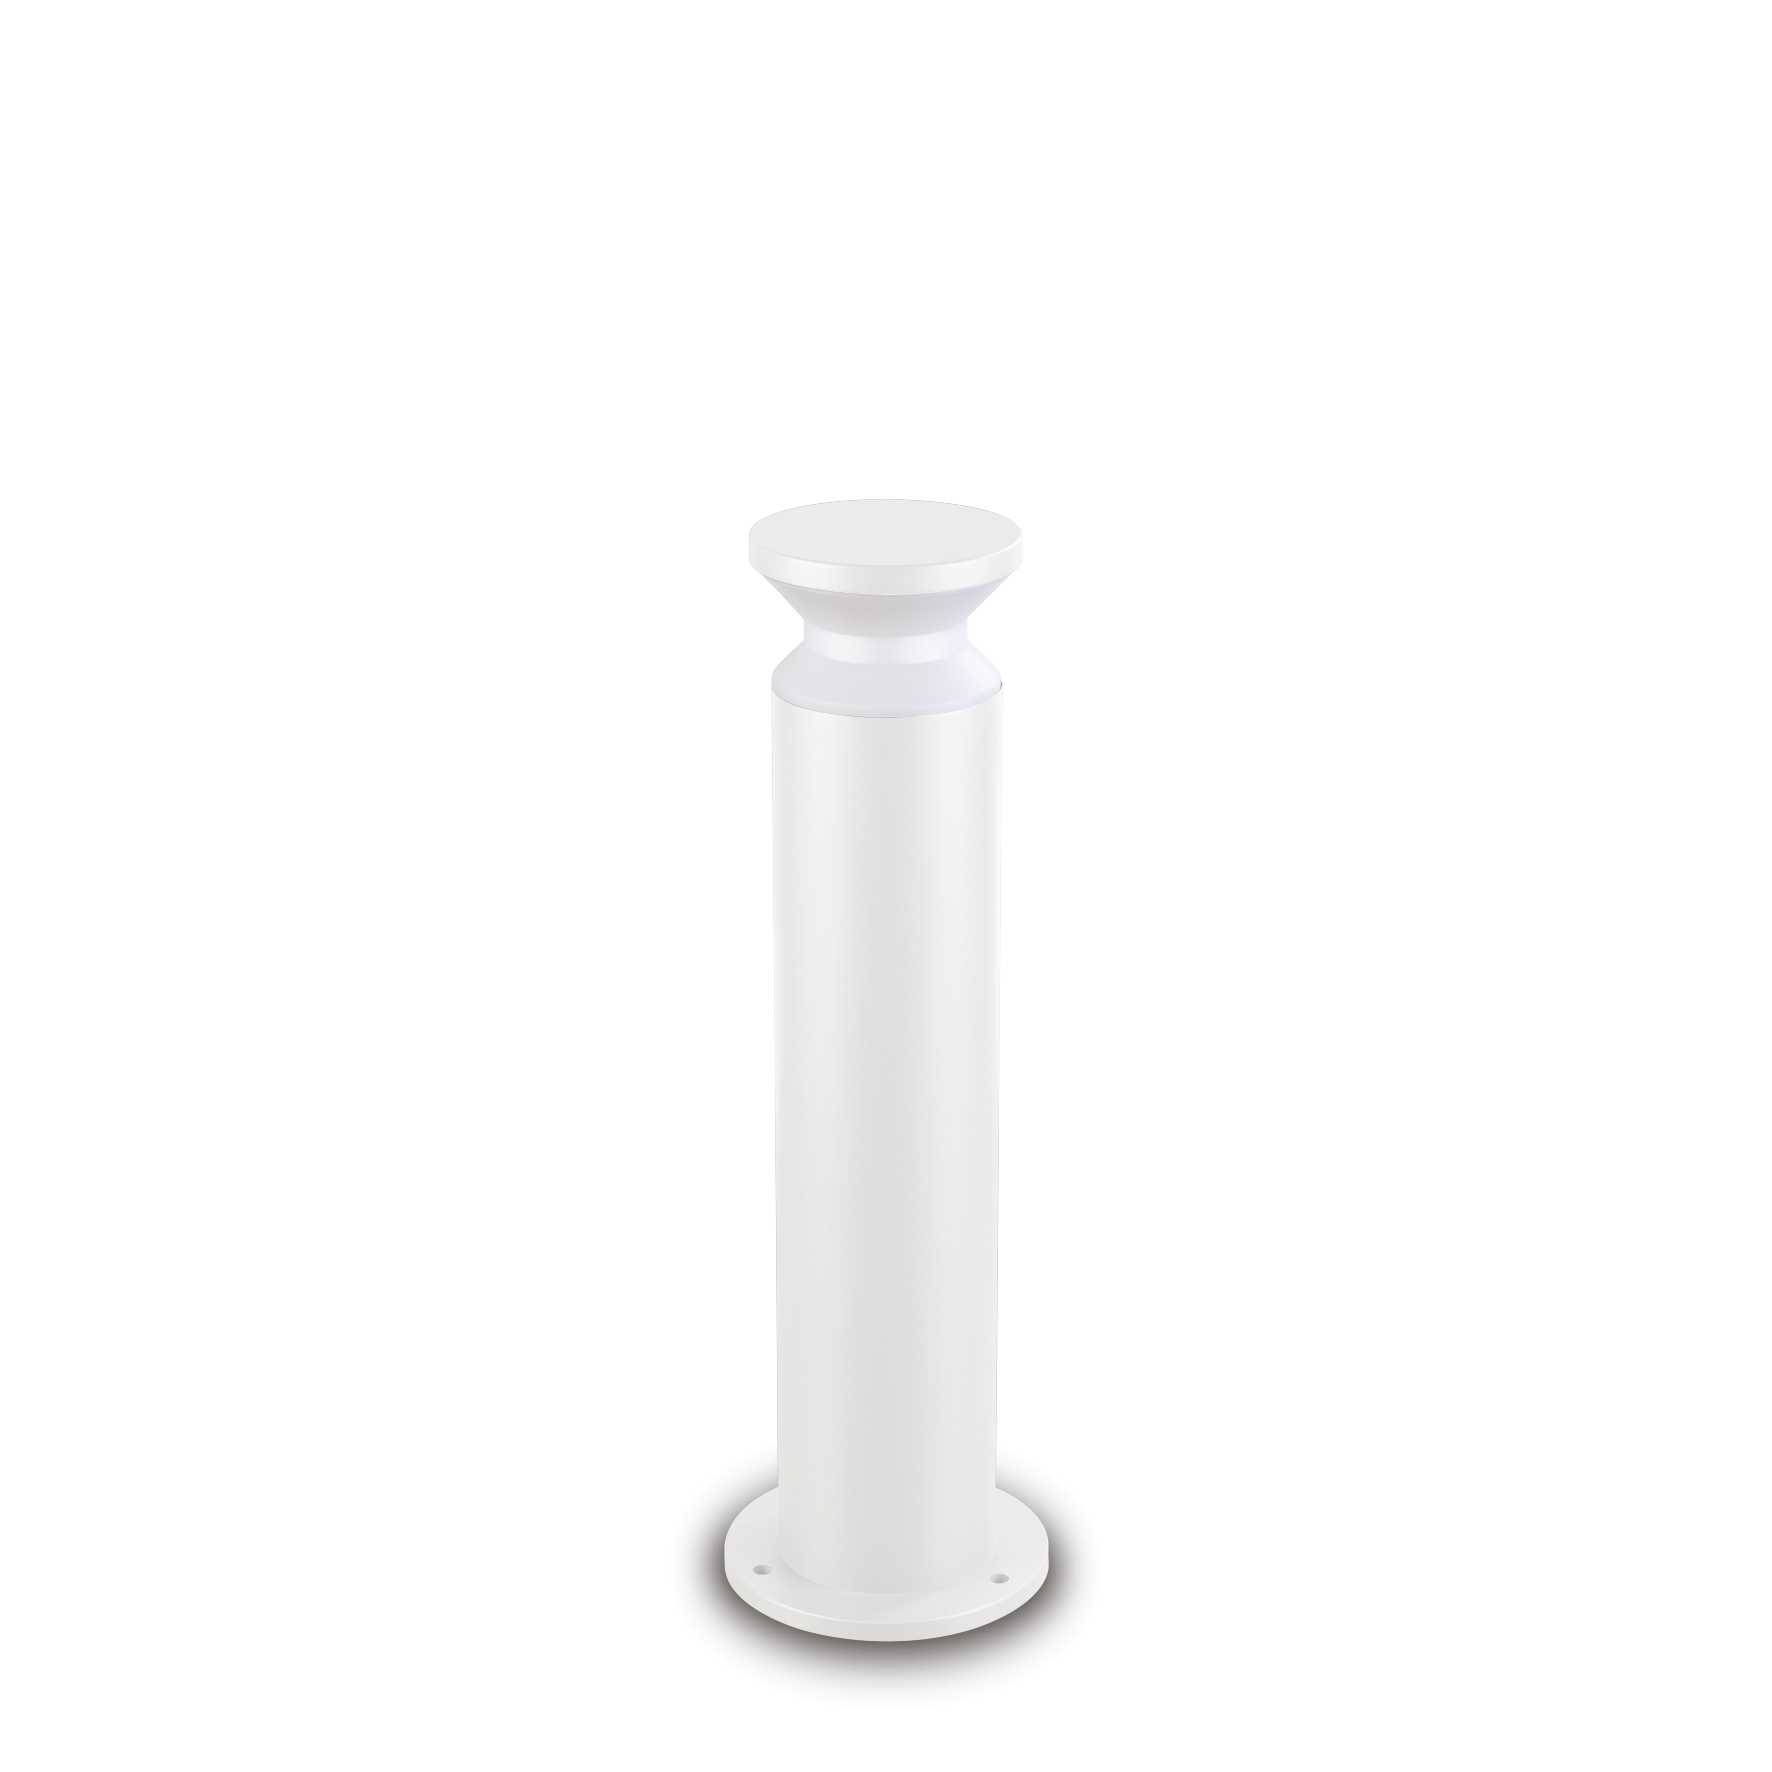 AD hotelska oprema Vanjska podna lampa Torre pt1 h60- Bijele boje slika proizvoda